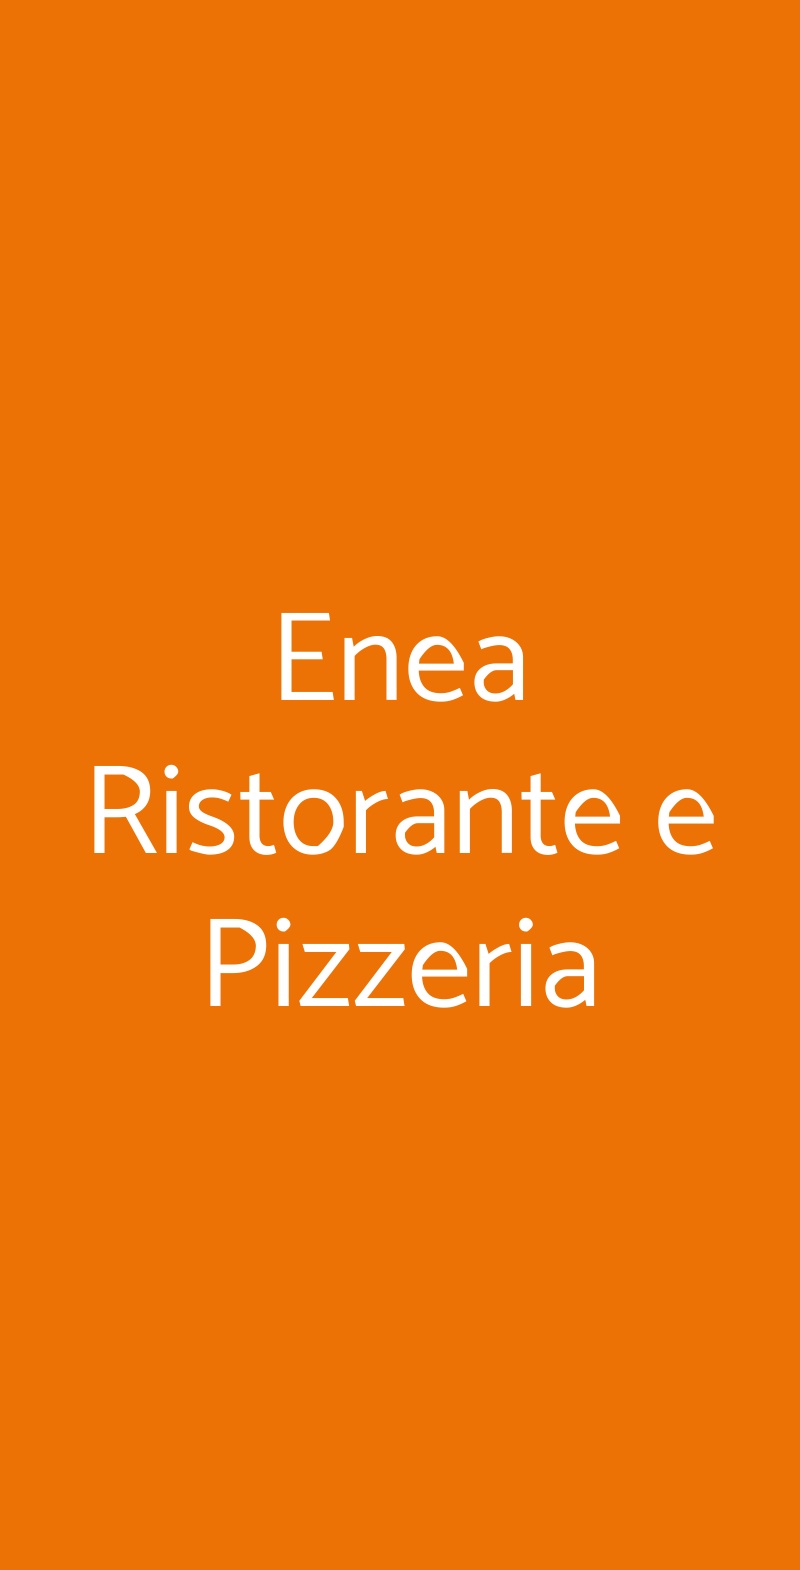 Enea Ristorante e Pizzeria Varese menù 1 pagina